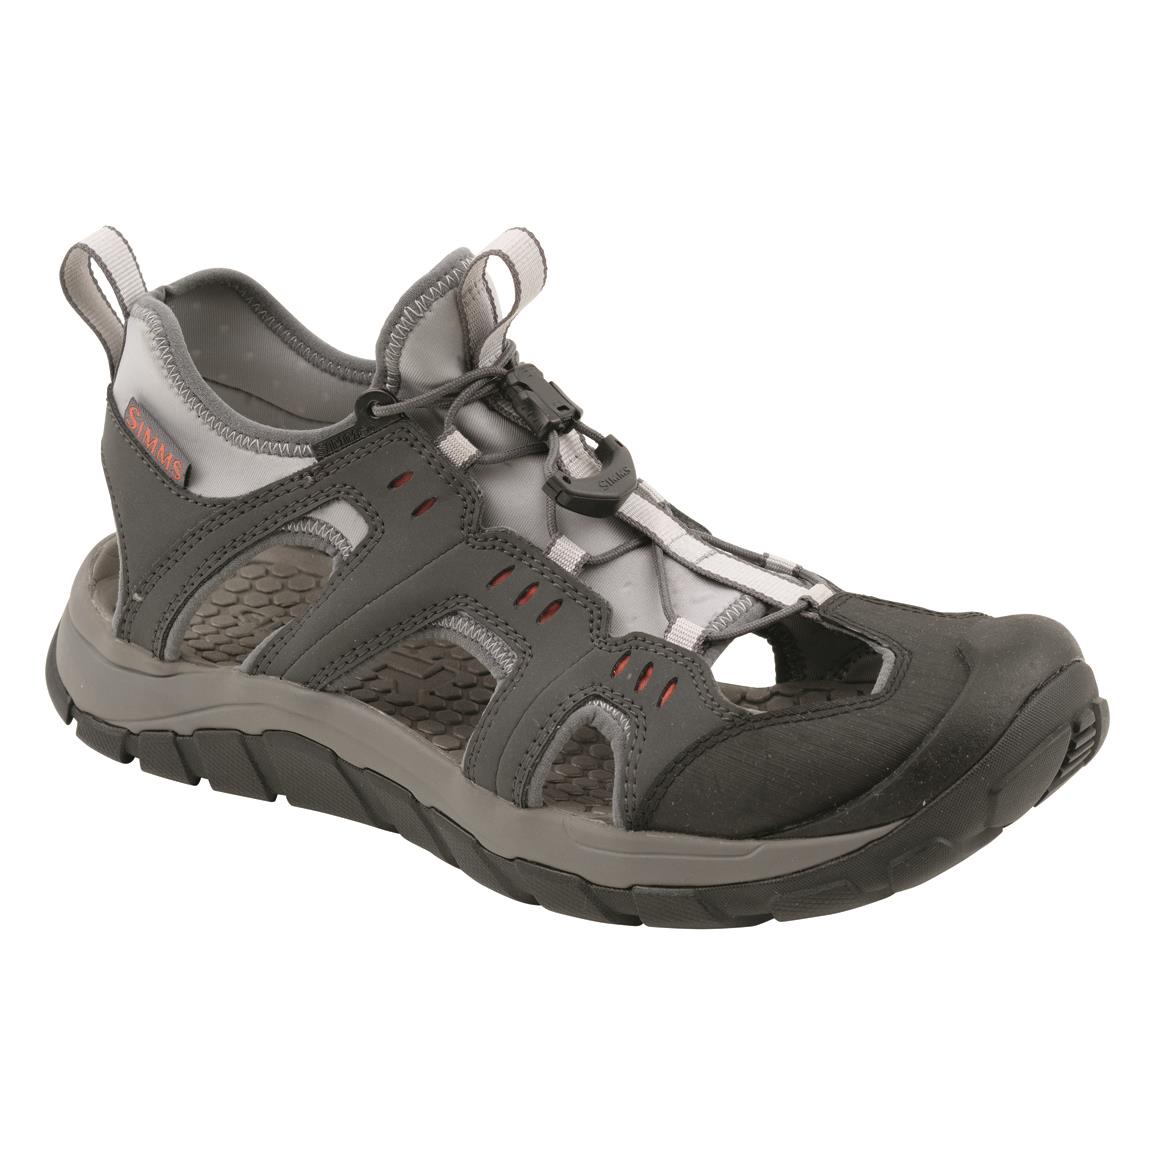 Simms Men's Confluence Wet Wading Sandals, Carbon